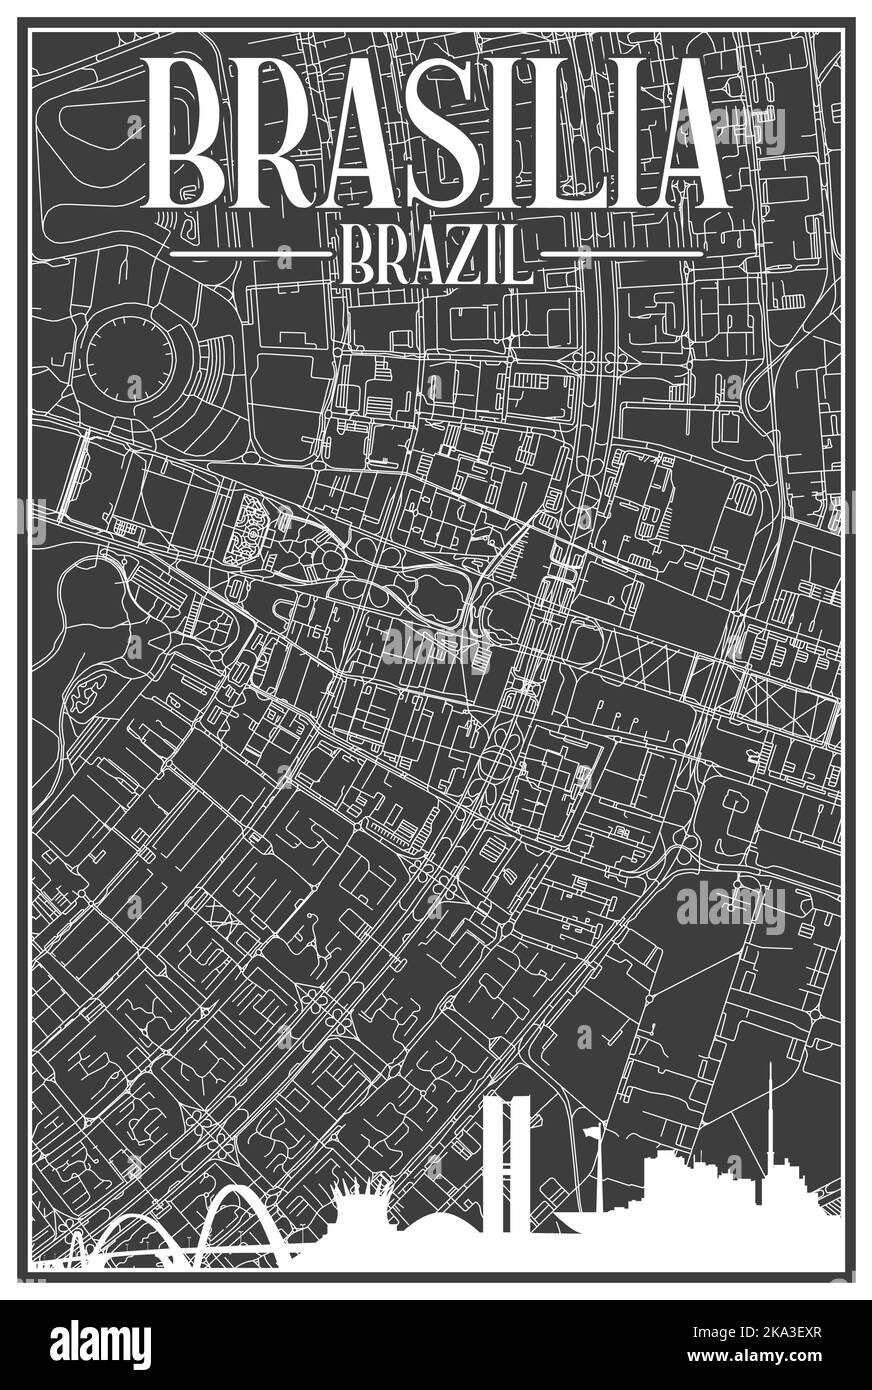 Handgezeichnete Netzwerkkarte von BRASILIA, BRASILIEN Stock Vektor